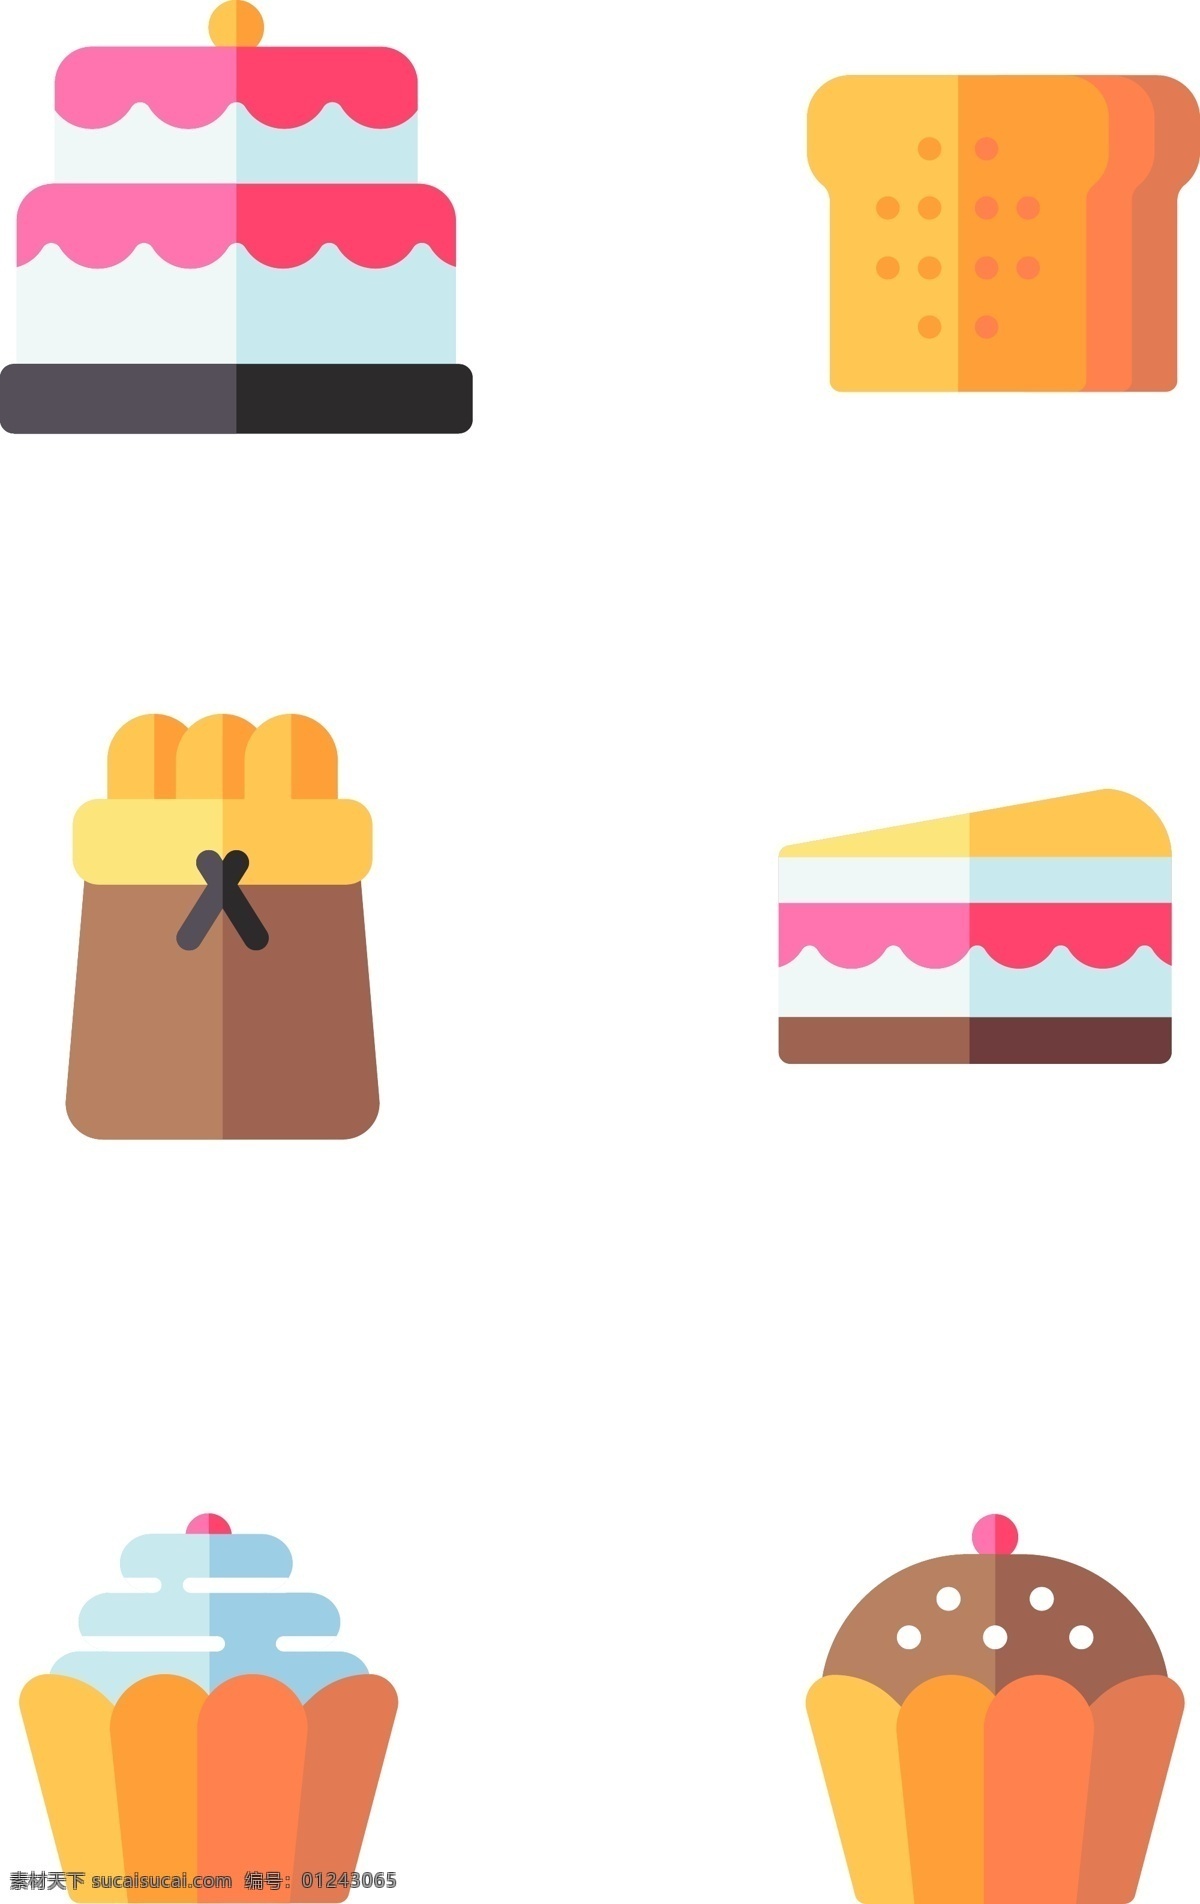 美味 甜点 甜品 插画 图标 扁平化 拟物 美味的 好吃的 蛋糕 面包 芝士蛋糕 有趣的 可爱的